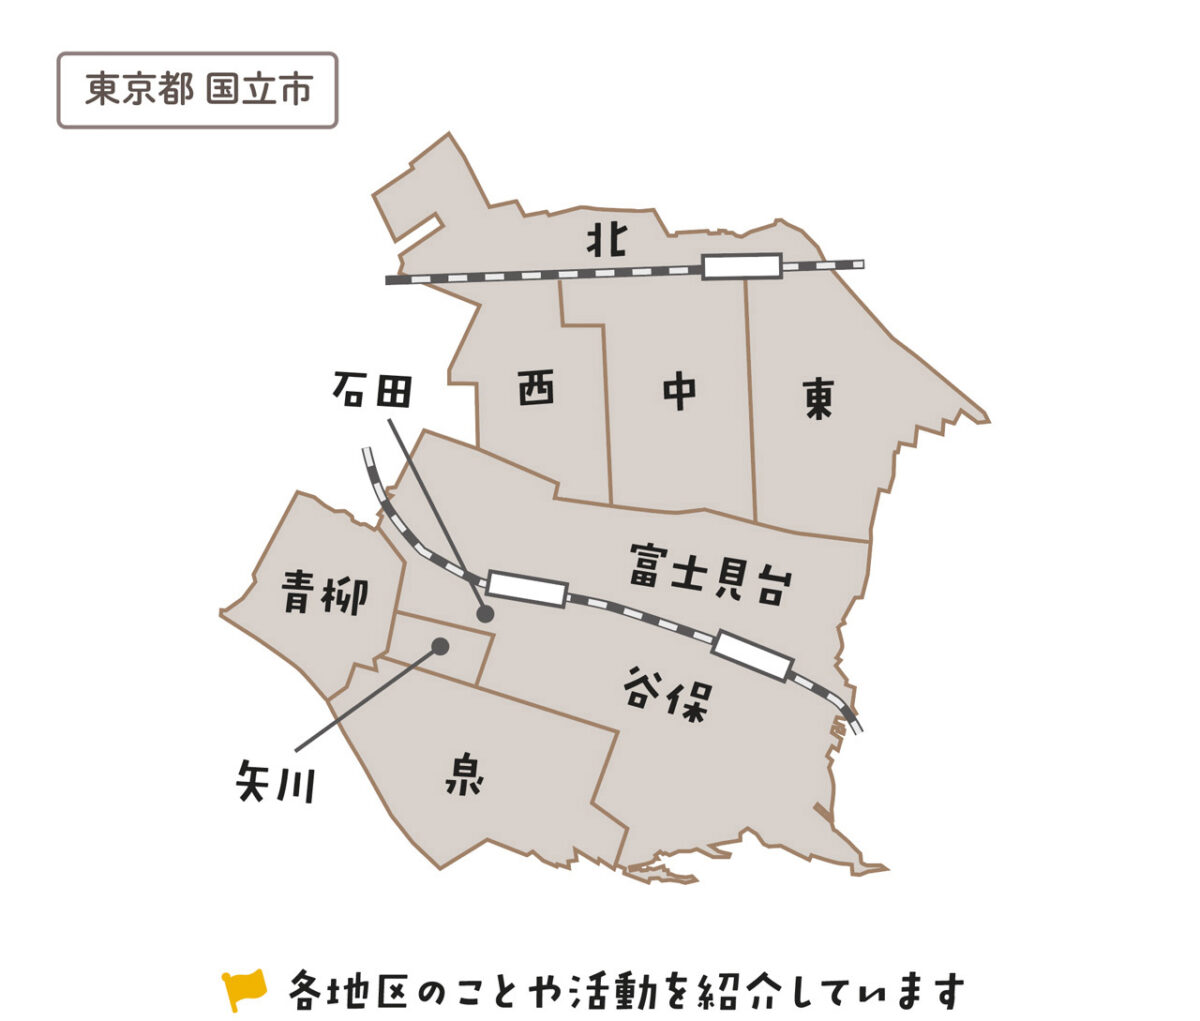 地域区分マップ